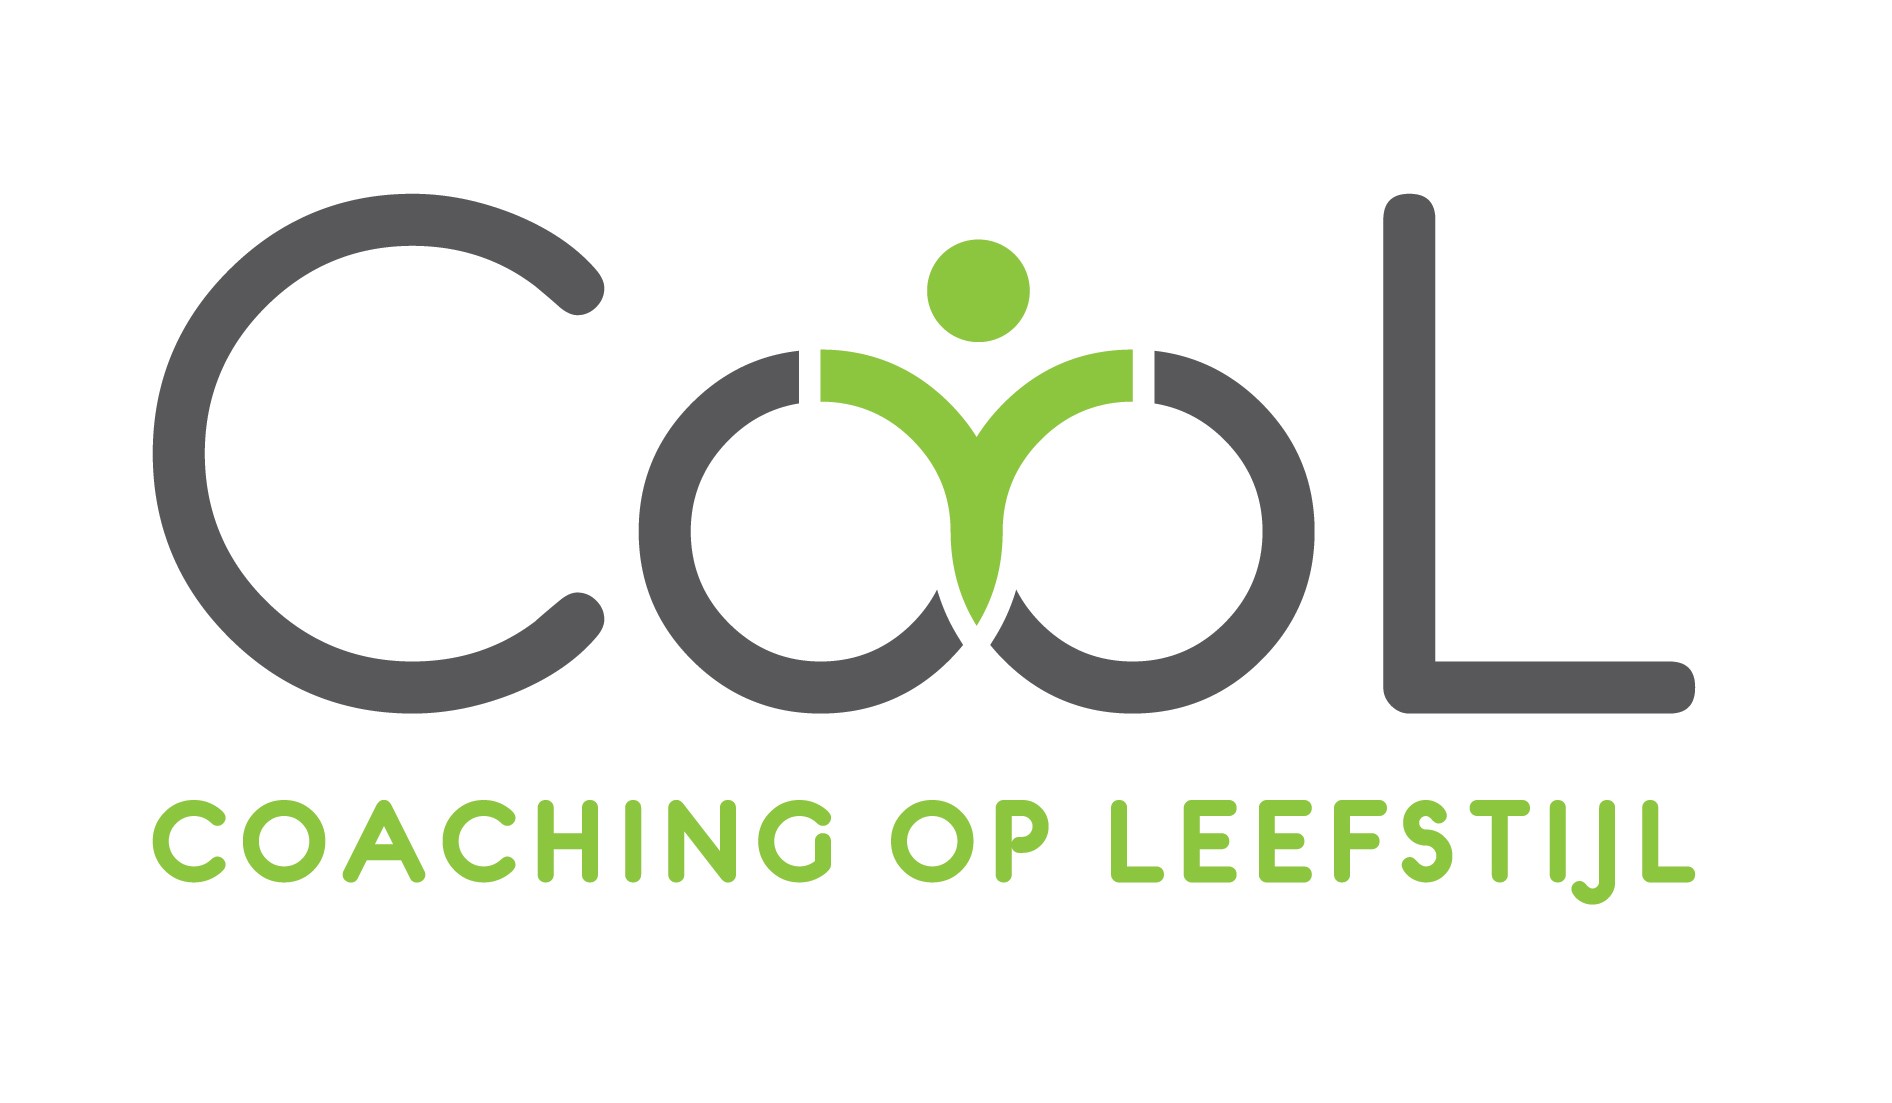 CooL logo